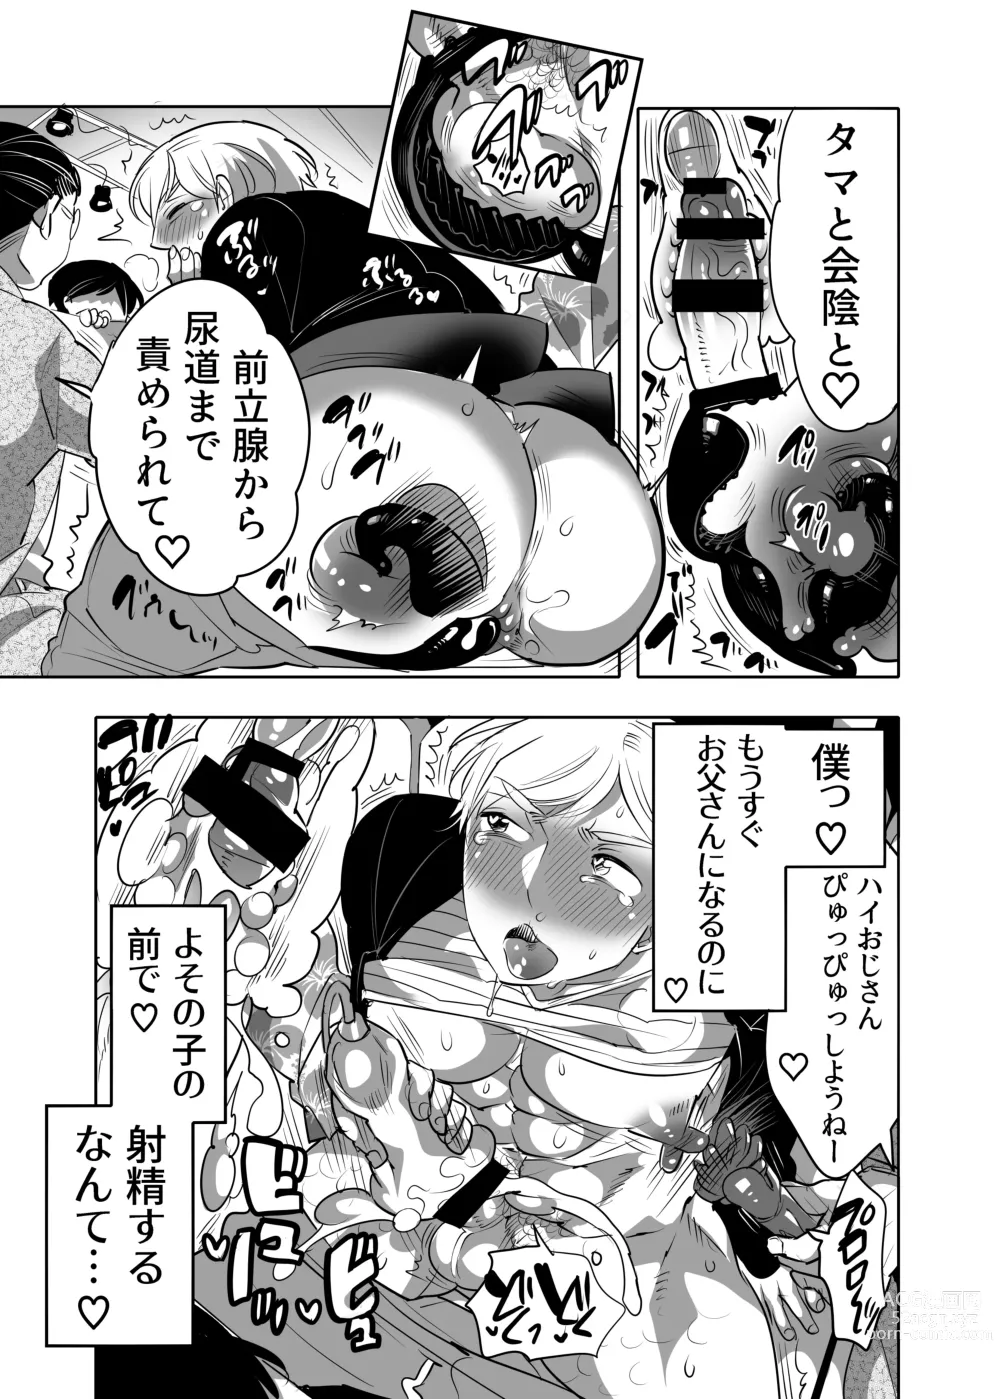 Page 13 of manga Abuso OK Prisionero Niño